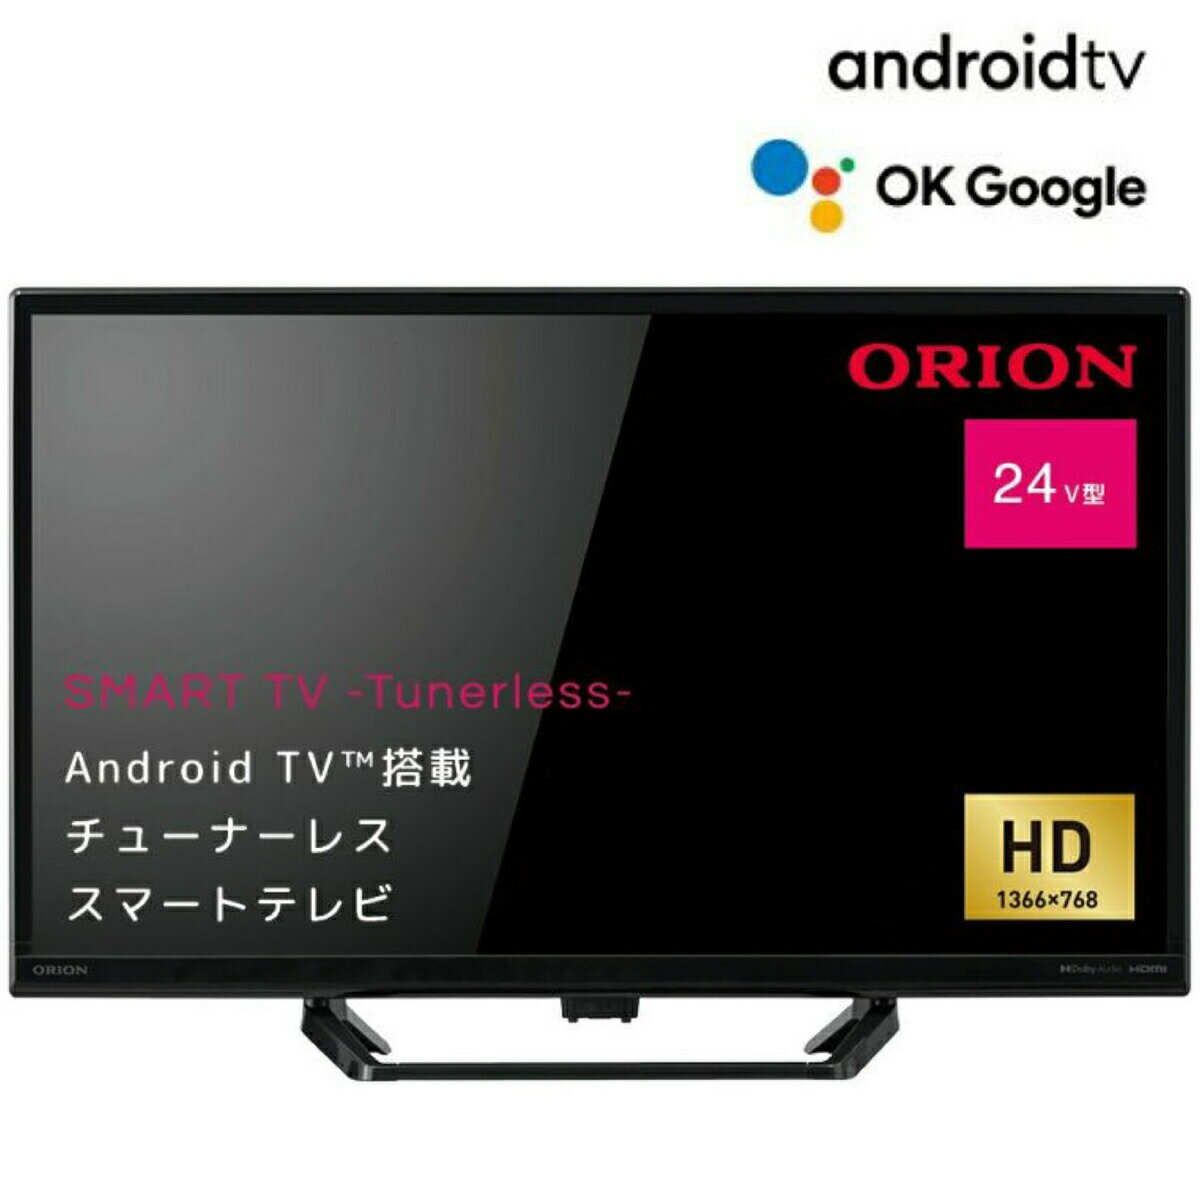 ORION SLHD241 AndroidTV 搭載 24型 スマートディスプレイ HD YouTube Netflix Amazon Prime Video Google Play リモコン TVチューナー非搭載 インターネット動画専用 スマートテレビ Android TV OS 11 アンドロイド オリオン ドウシシャ (12)